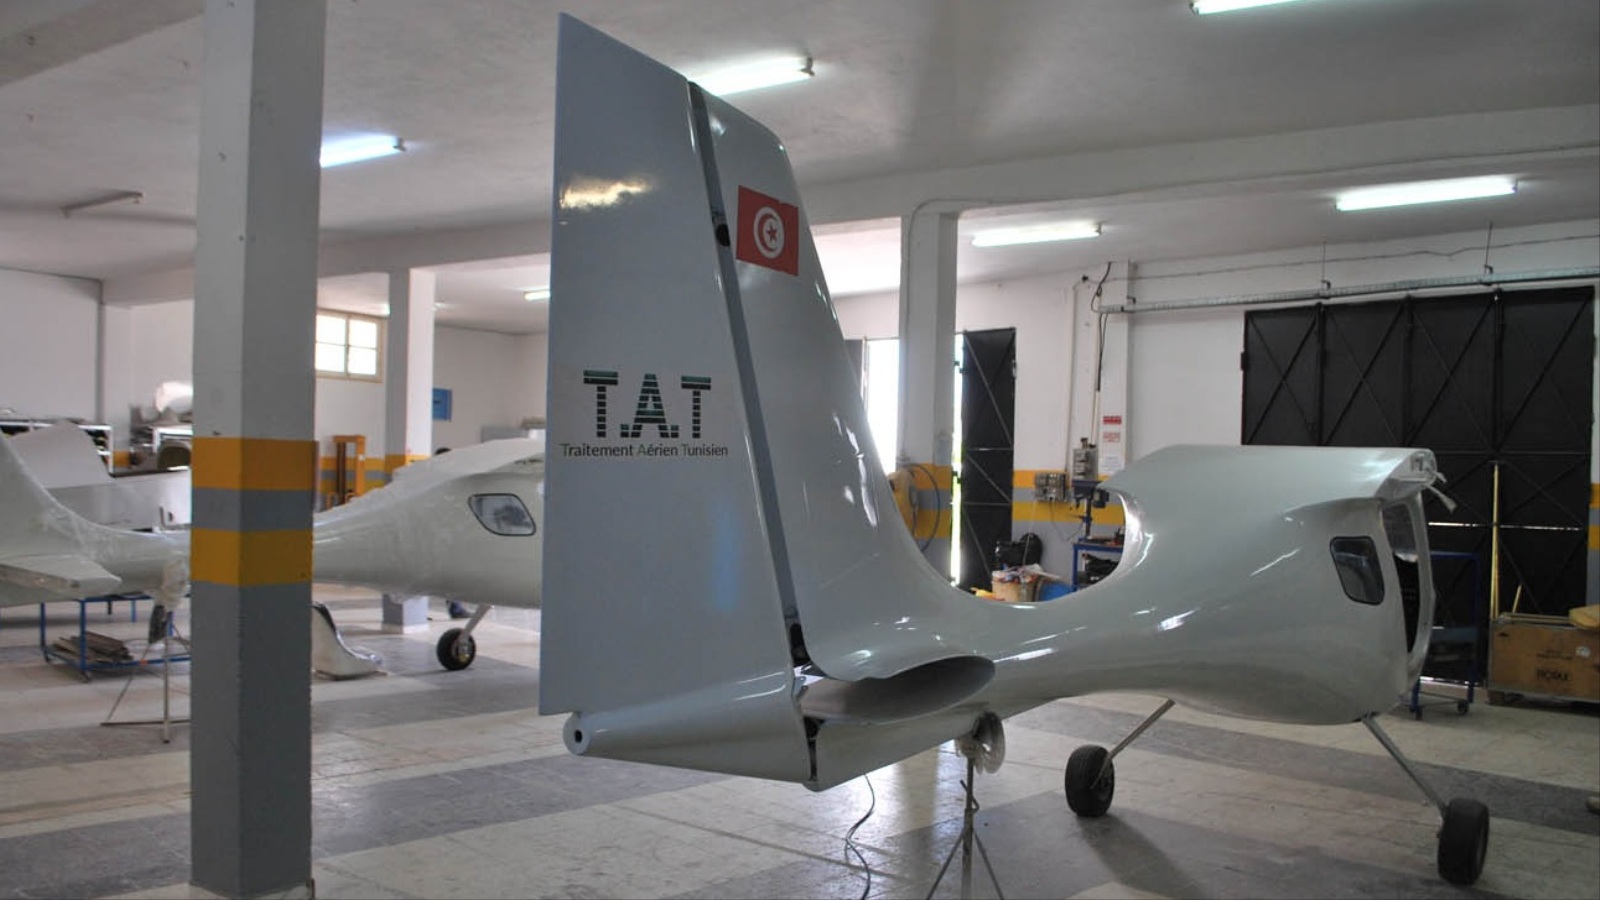 رغم أن الطائرات مصنعة في تونس وتحمل العلم التونسي فإن أصحابها لا يستطيعون تسويقها داخليا (الجزيرة)